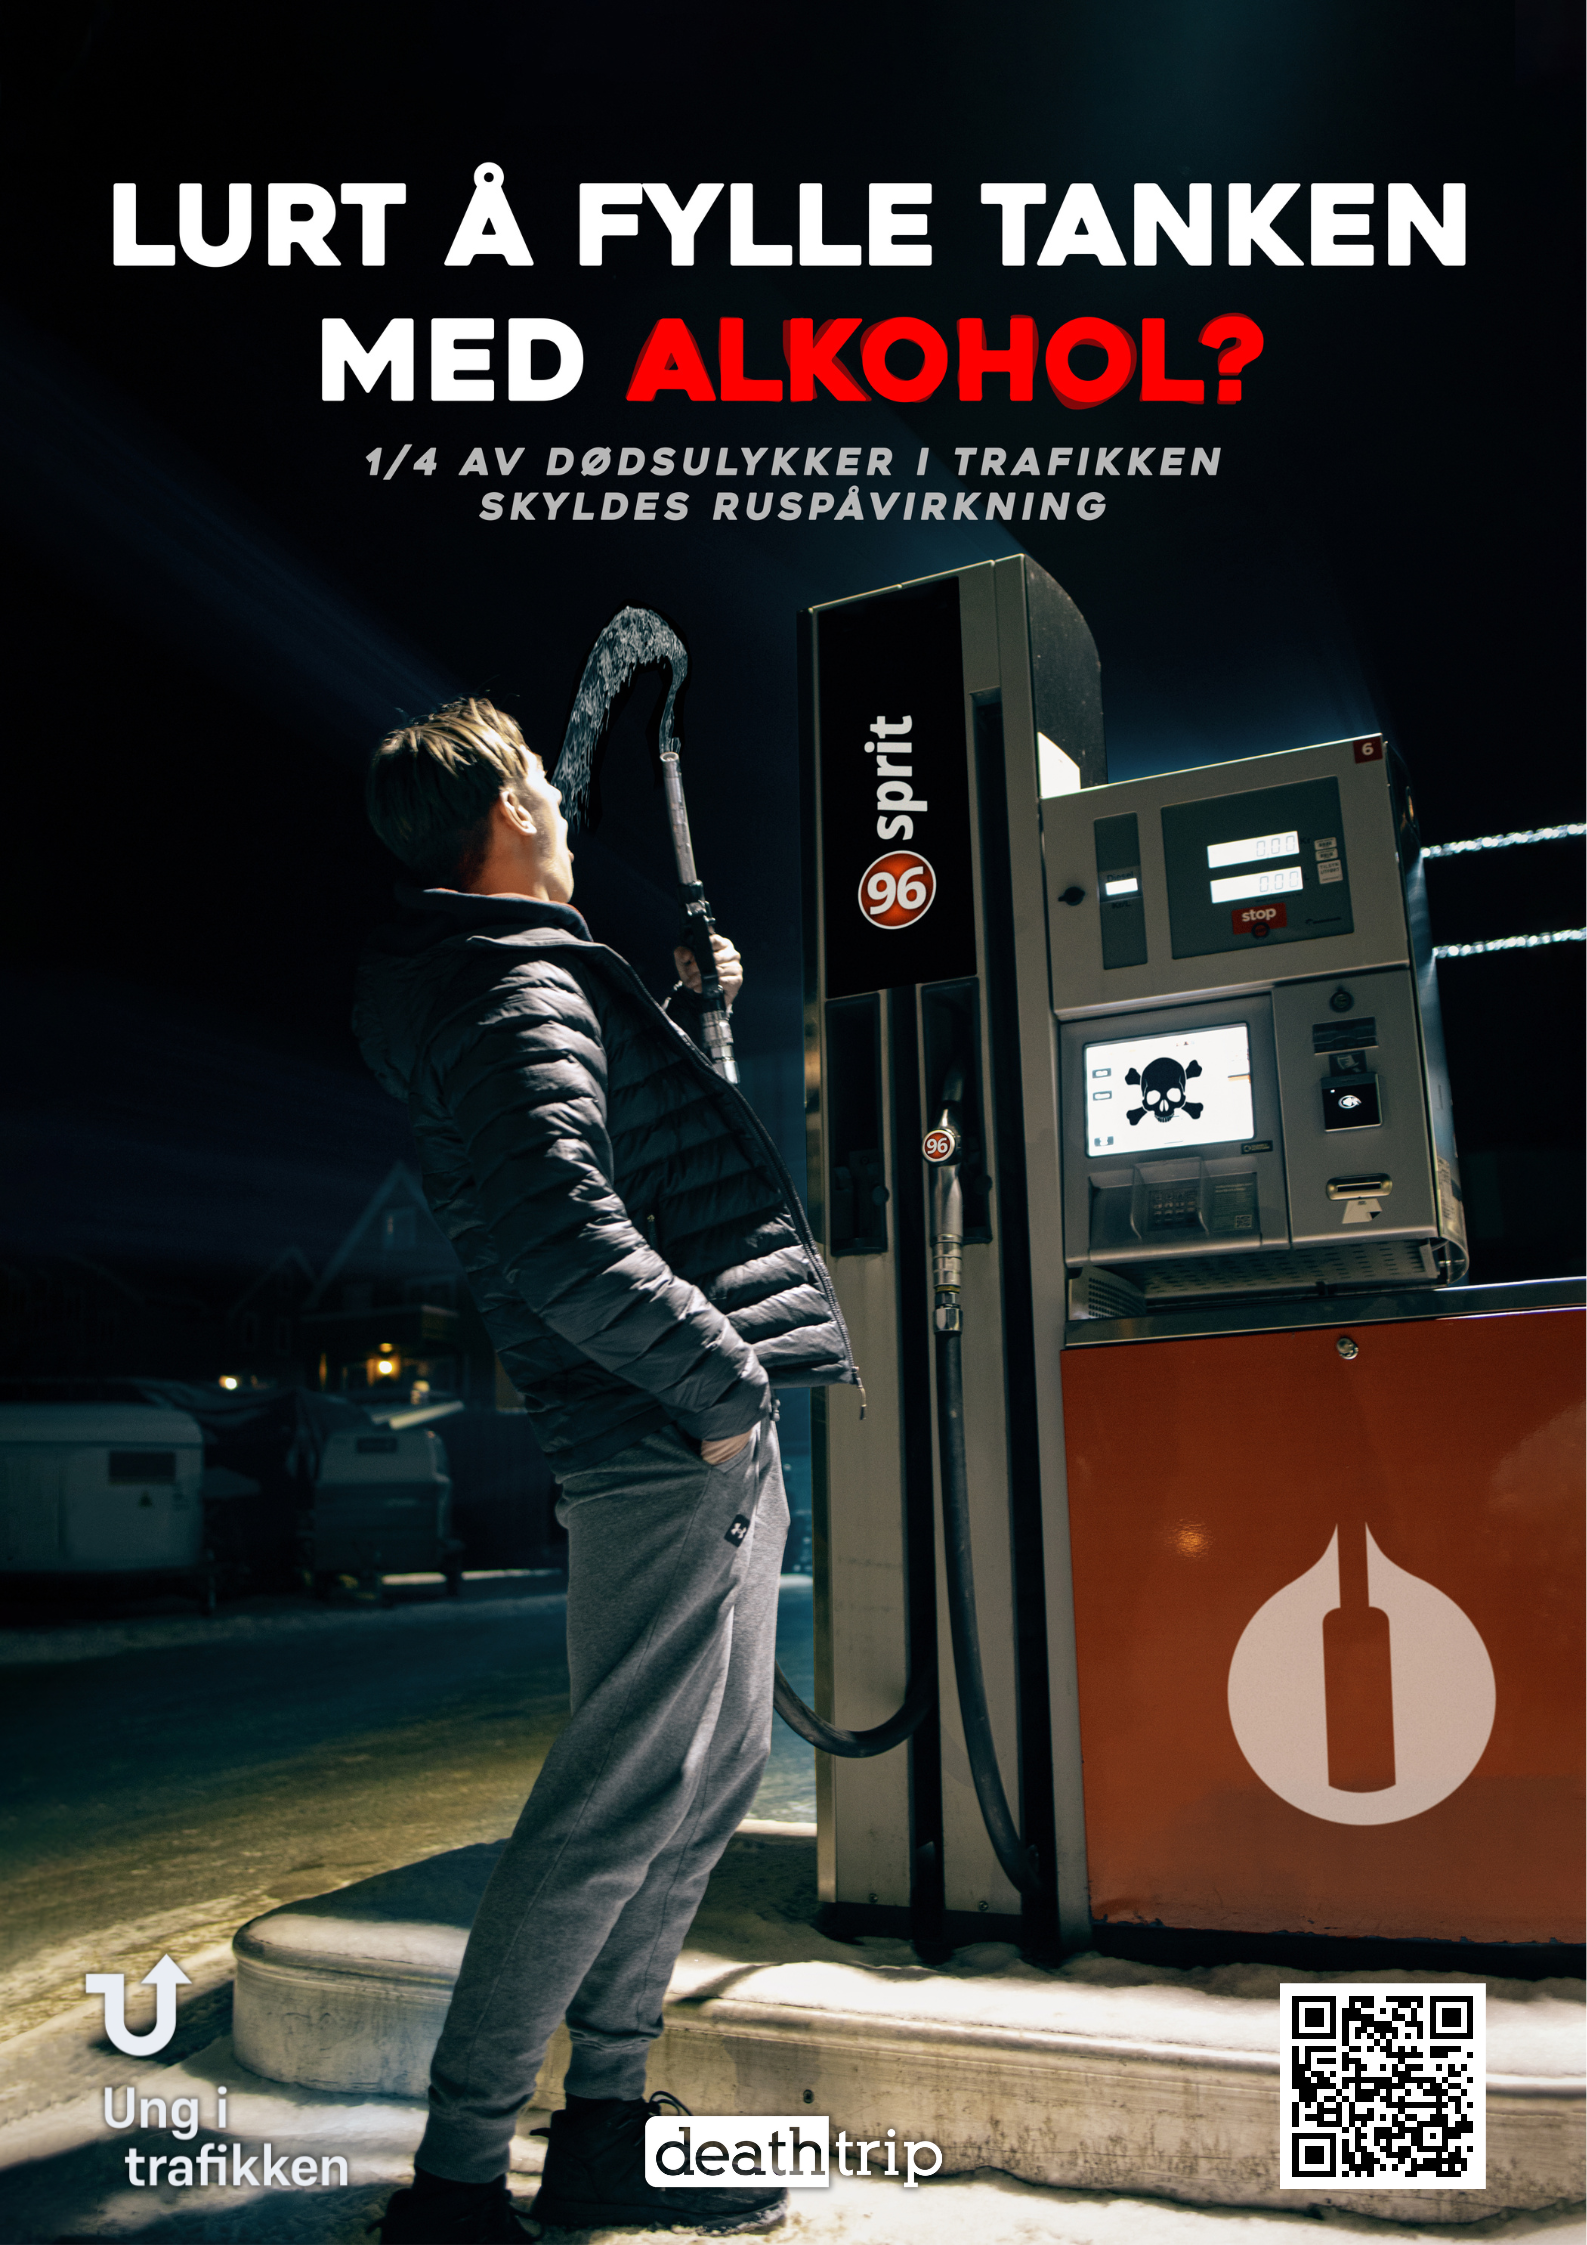 En gutt drikker fra bensinpumpe. Teksten "Lurt å fylle tanken med alkohol" vises over. "1/4 av dødsulykker i trafikken skyldes rus" står under.